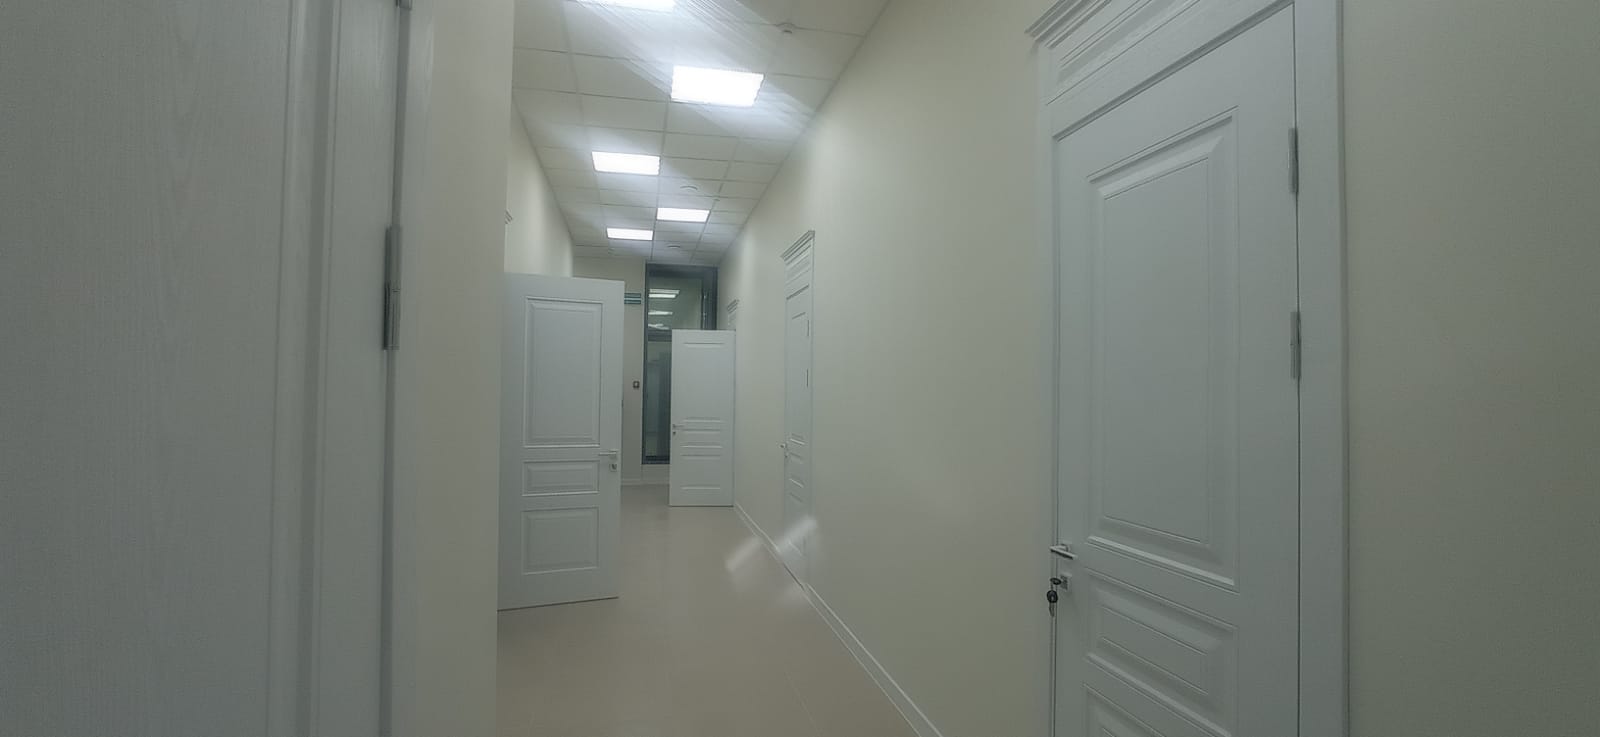 Предлагаем к аренде офисное помещение в офисном центре площадь 11 м² на 2 этаже, напрямую от собственника._2